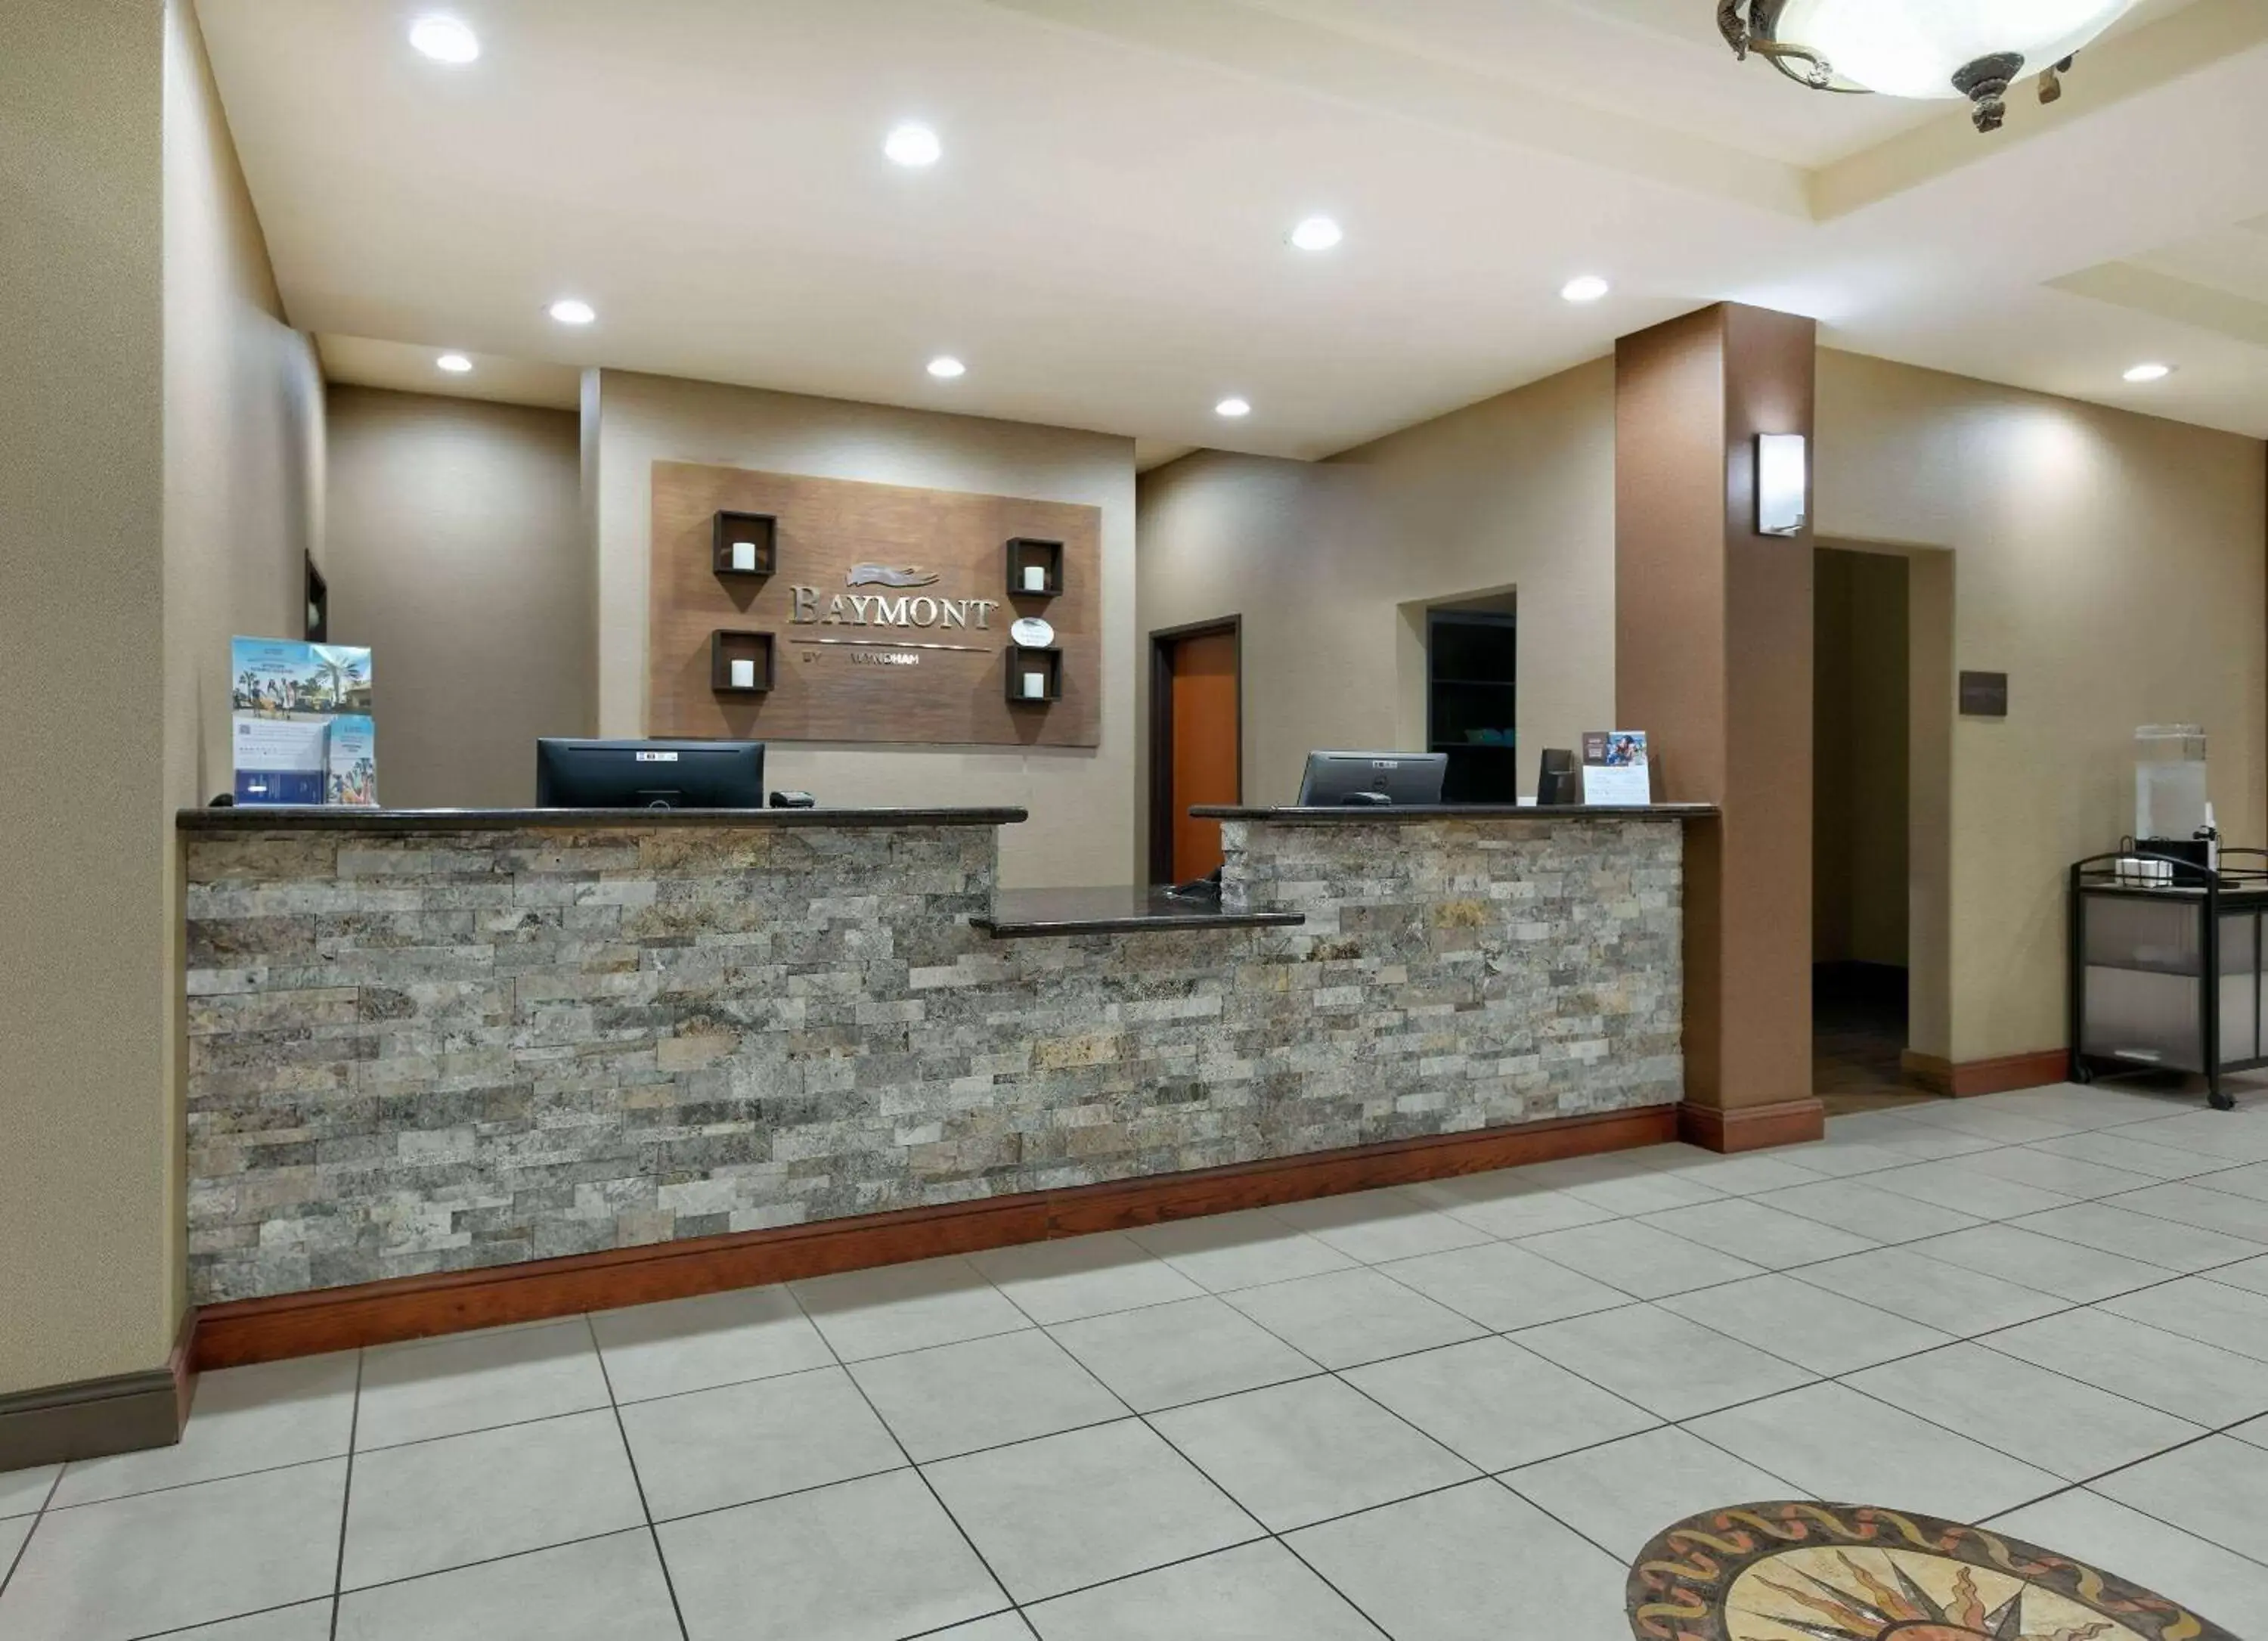 Lobby or reception, Lobby/Reception in Baymont Inn & Suites by Wyndham Glen Rose